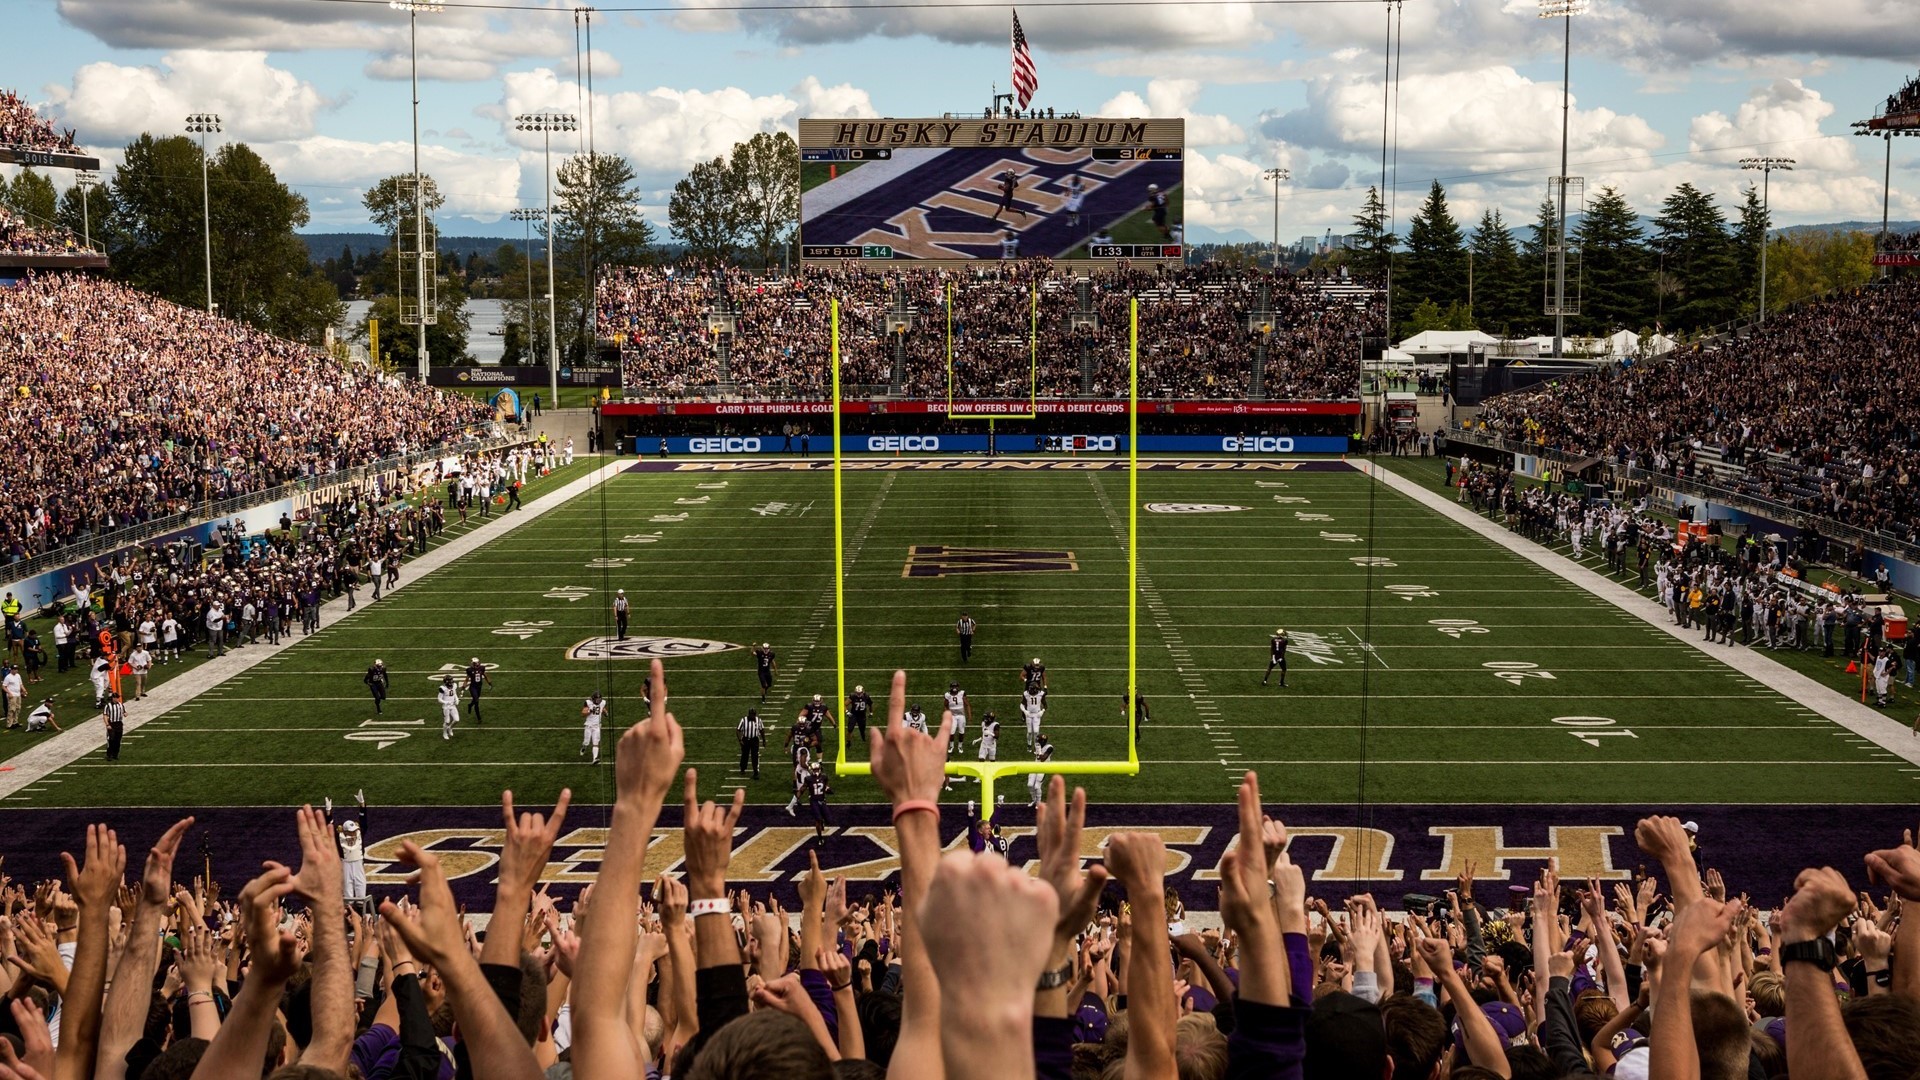 59. Husky Stadium University Of Washington, Seattle, Washington